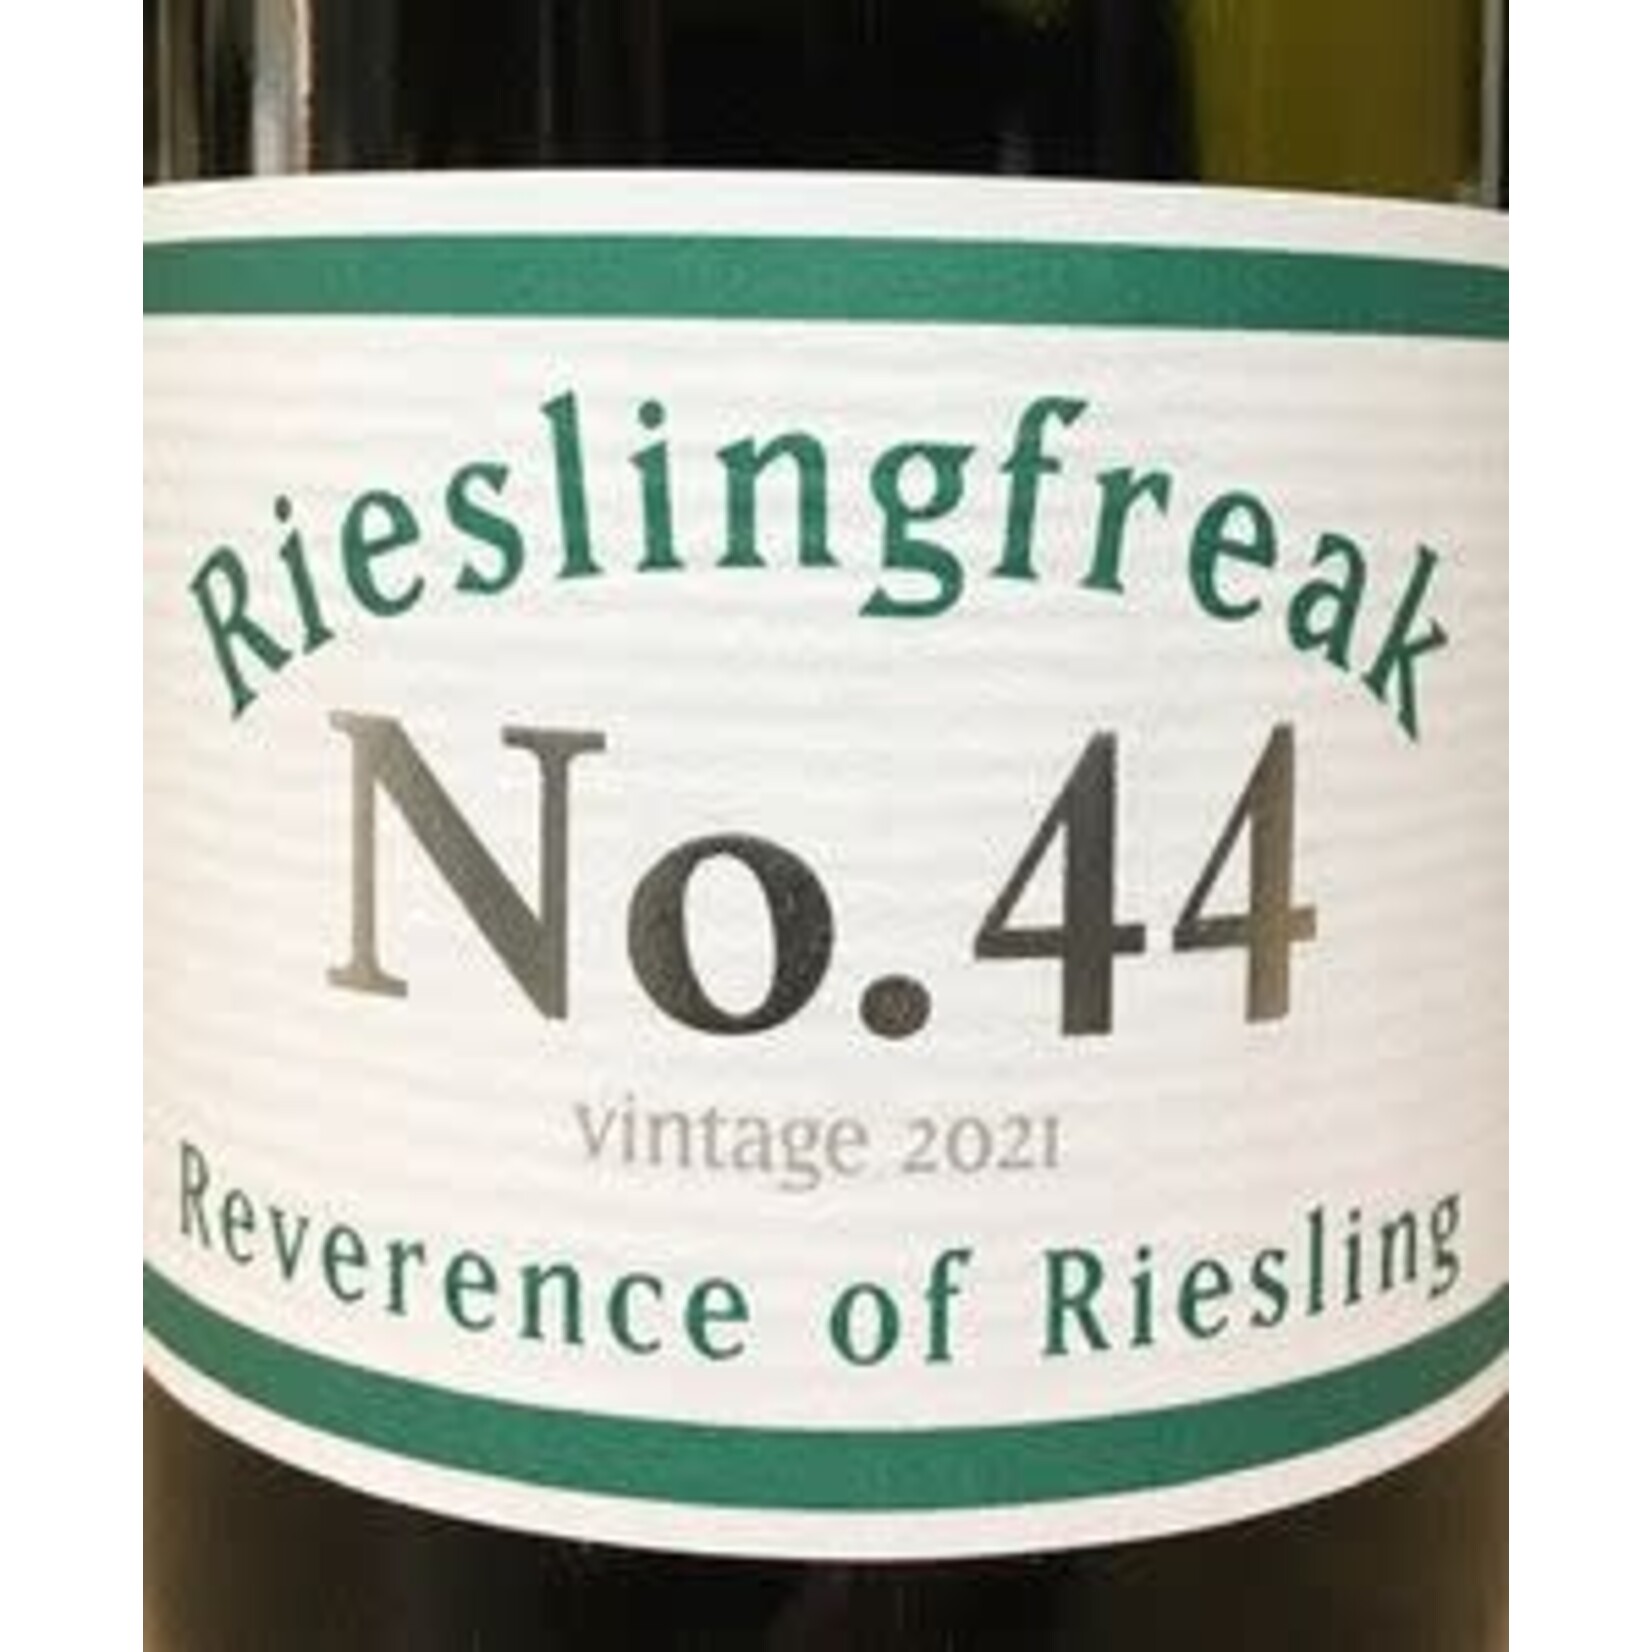 Rieslingfreak Rieslingfreak No. 44 Reverence of Riesling Vintage 2022